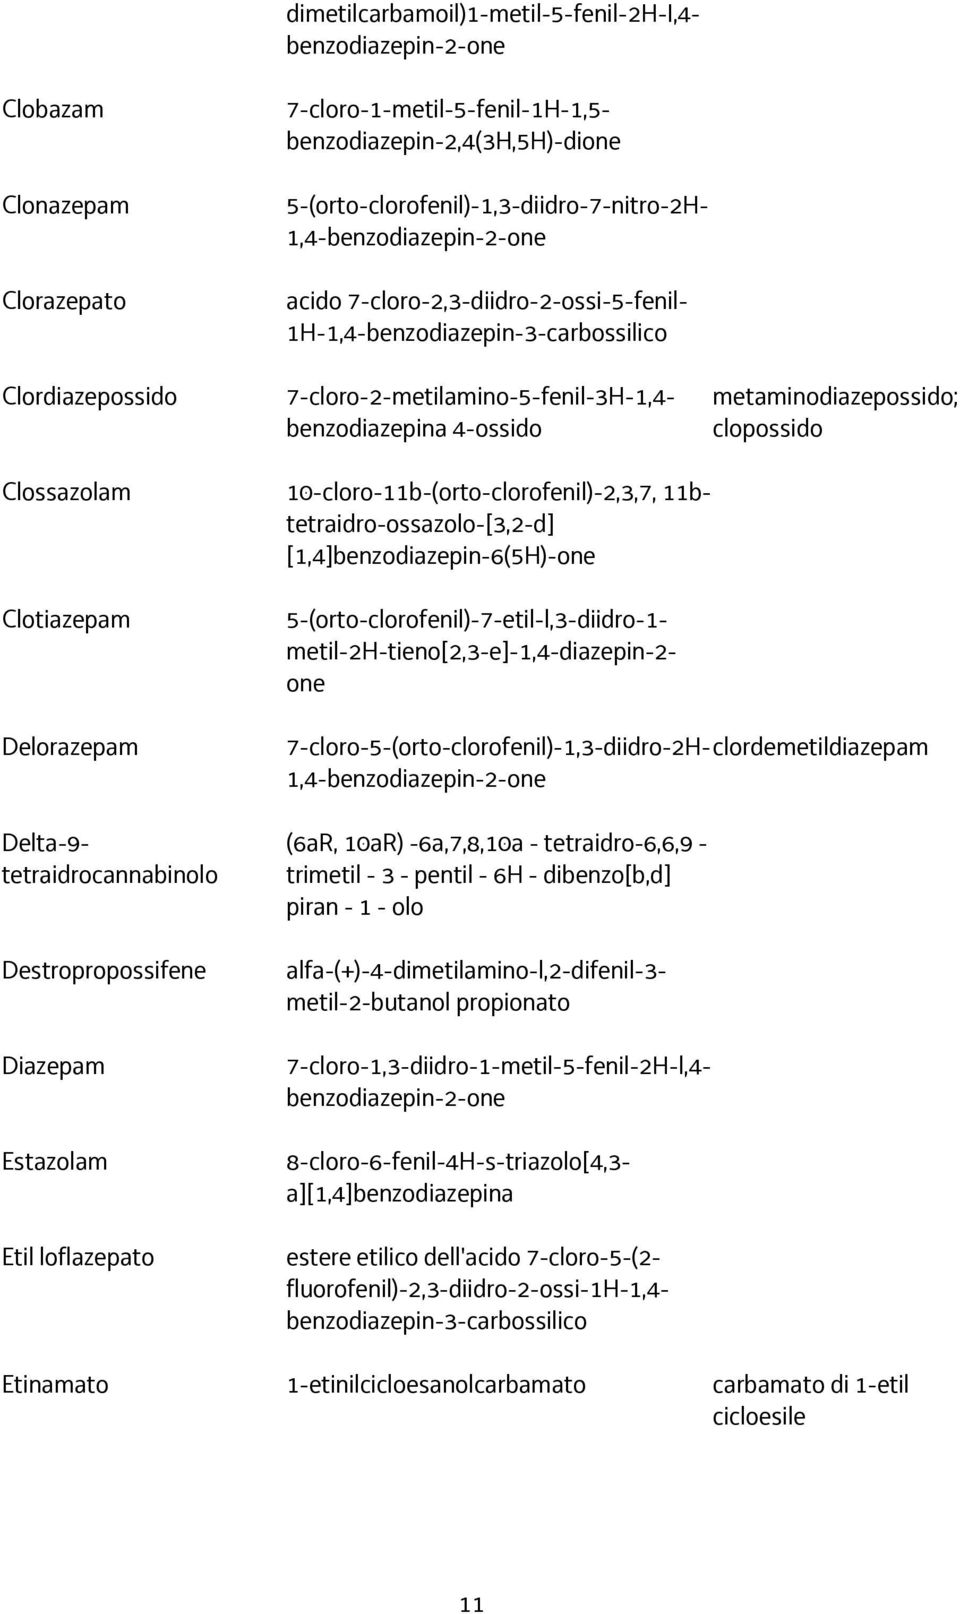 metaminodiazepossido; clopossido Clossazolam 10-cloro-11b-(orto-clorofenil)-2,3,7, 11btetraidro-ossazolo-[3,2-d] [1,4]benzodiazepin-6(5H)-one Clotiazepam Delorazepam Delta-9- tetraidrocannabinolo